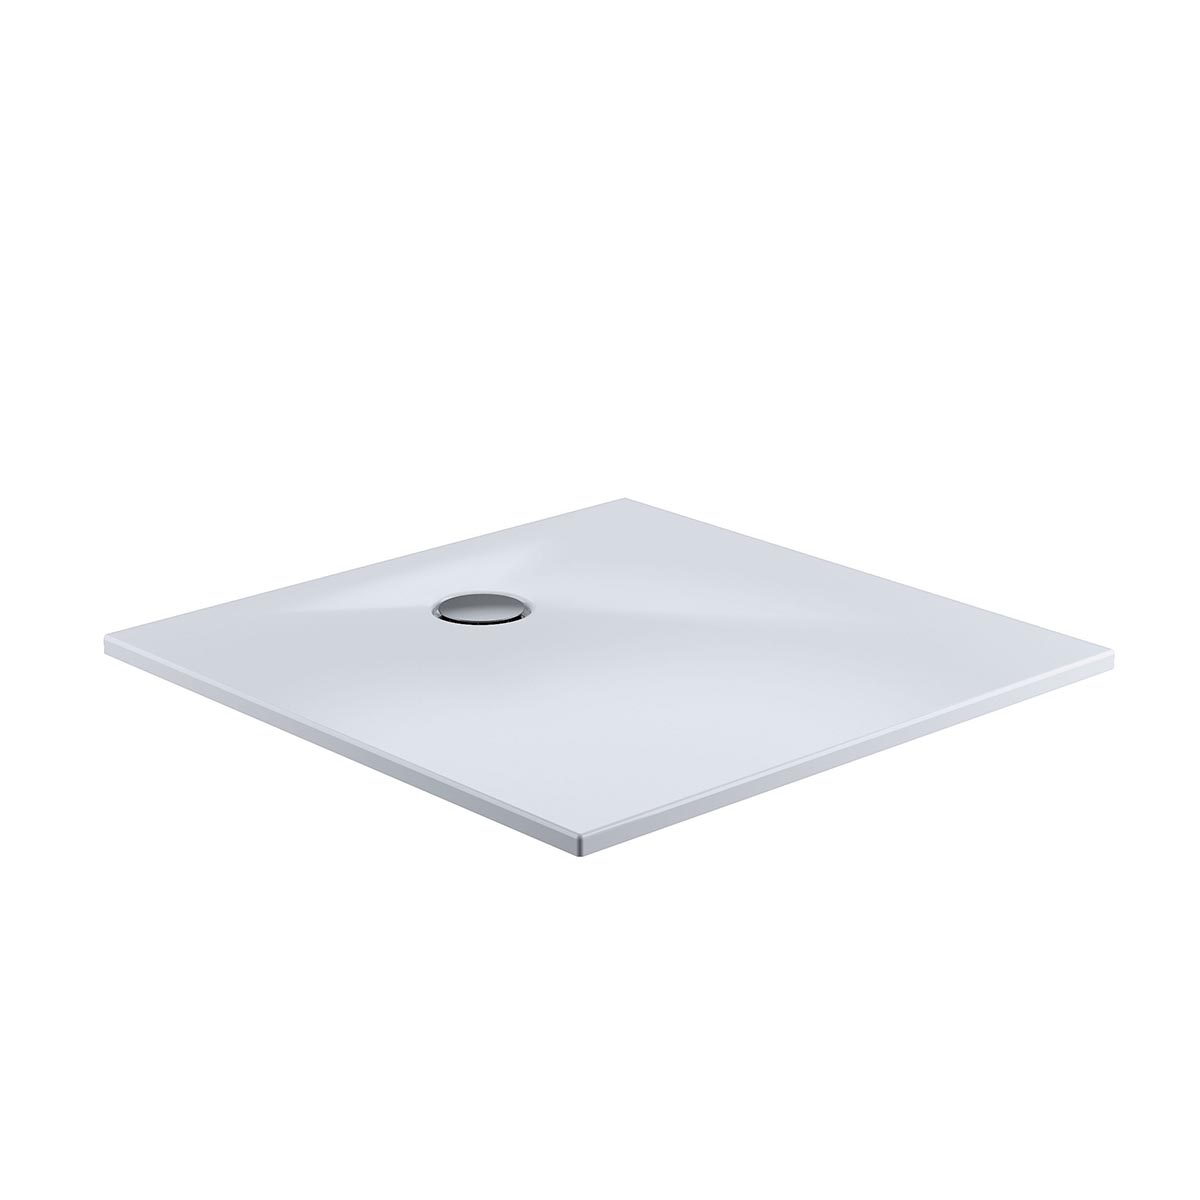 HSK Marmor-Polymer Quadrat Duschwanne plan-Weiß-100 x 100 cm-ohne AntiSlip-Beschichtung-mit Aquaproof-Dichtset